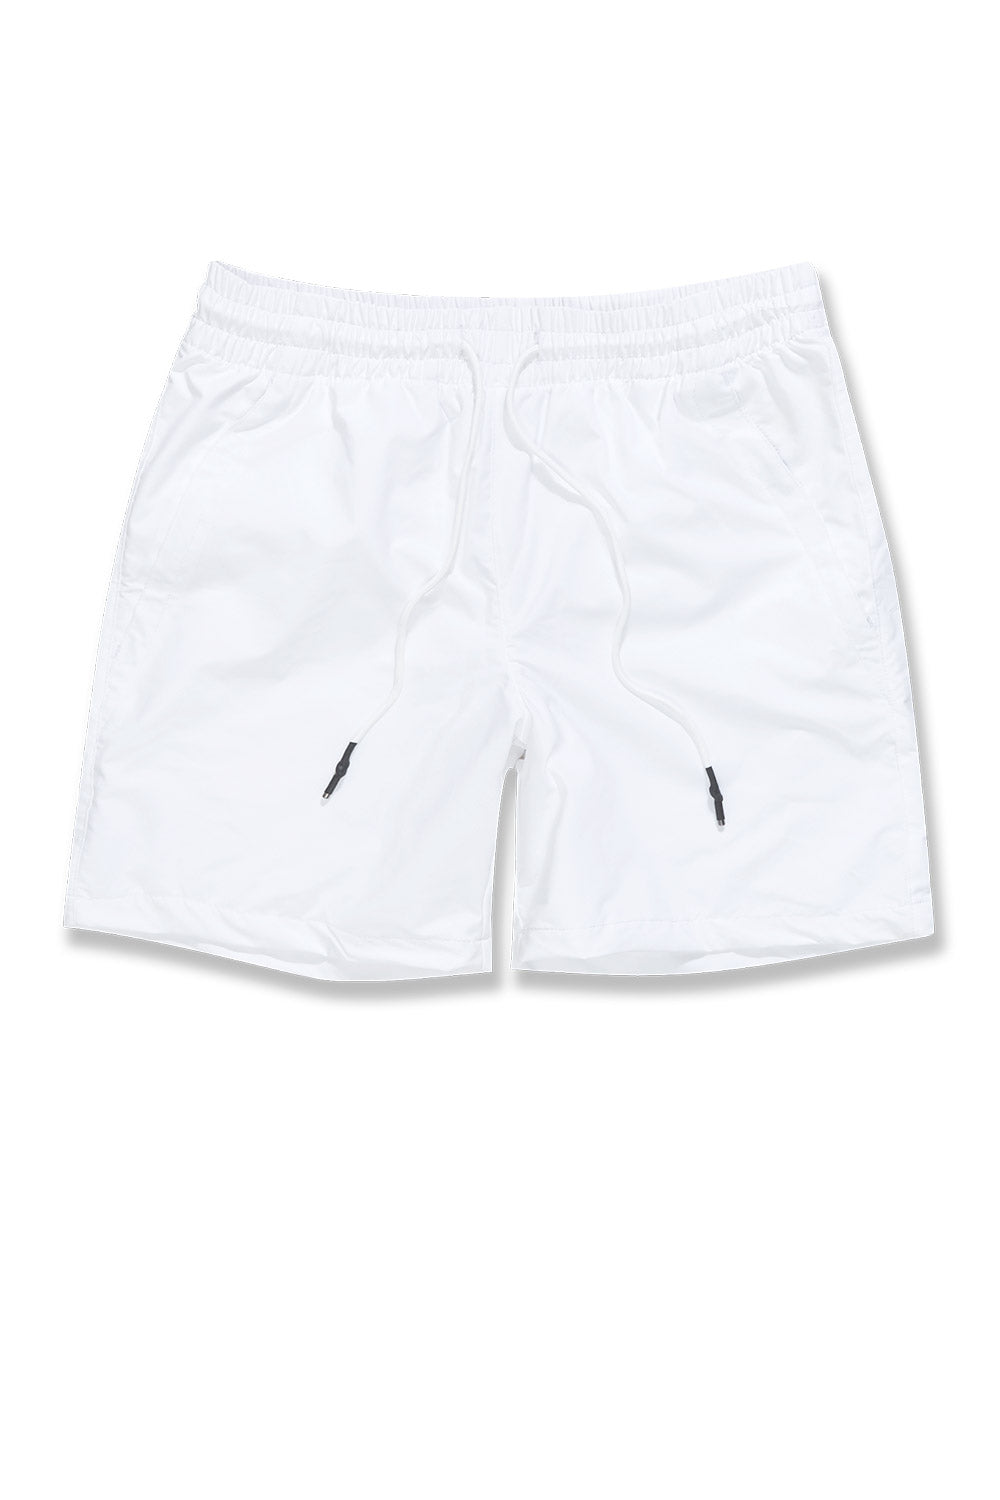 Jordan Craig Athletic - Marathon Shorts White / S